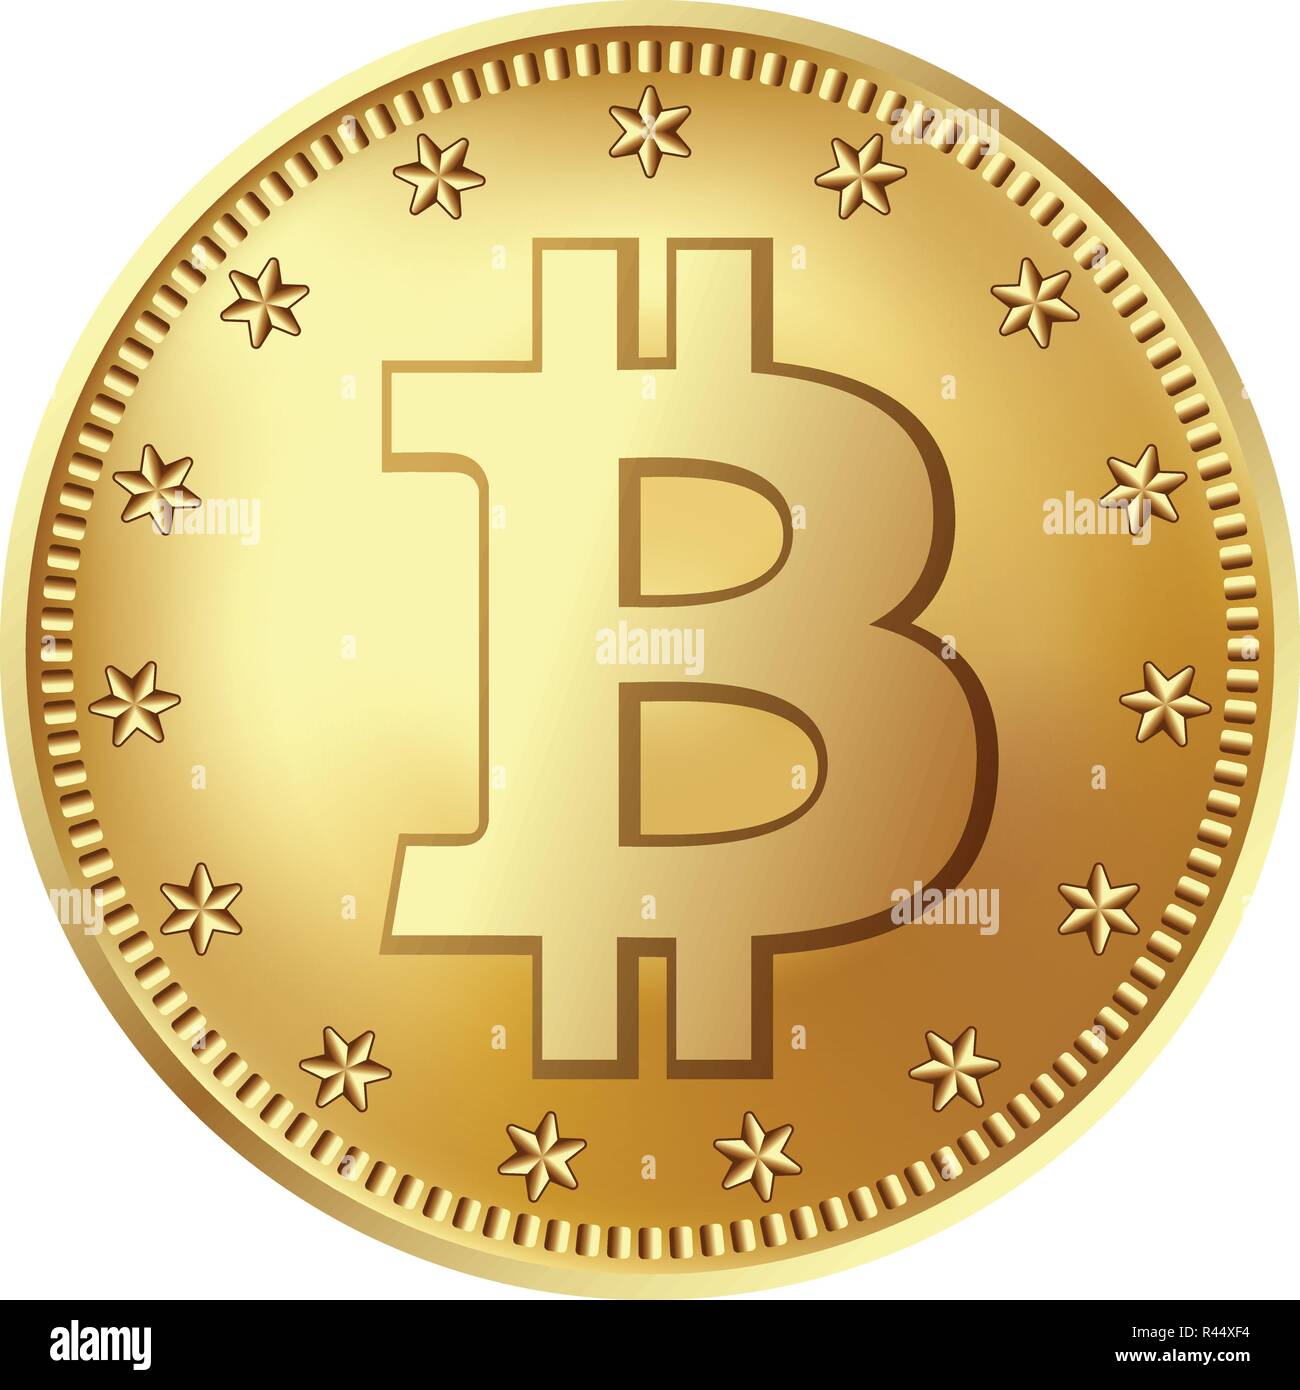 Bitcoin medaglia d'oro. Denaro e finanze simbolo di fintech net banking. Illustrazione Vettoriale